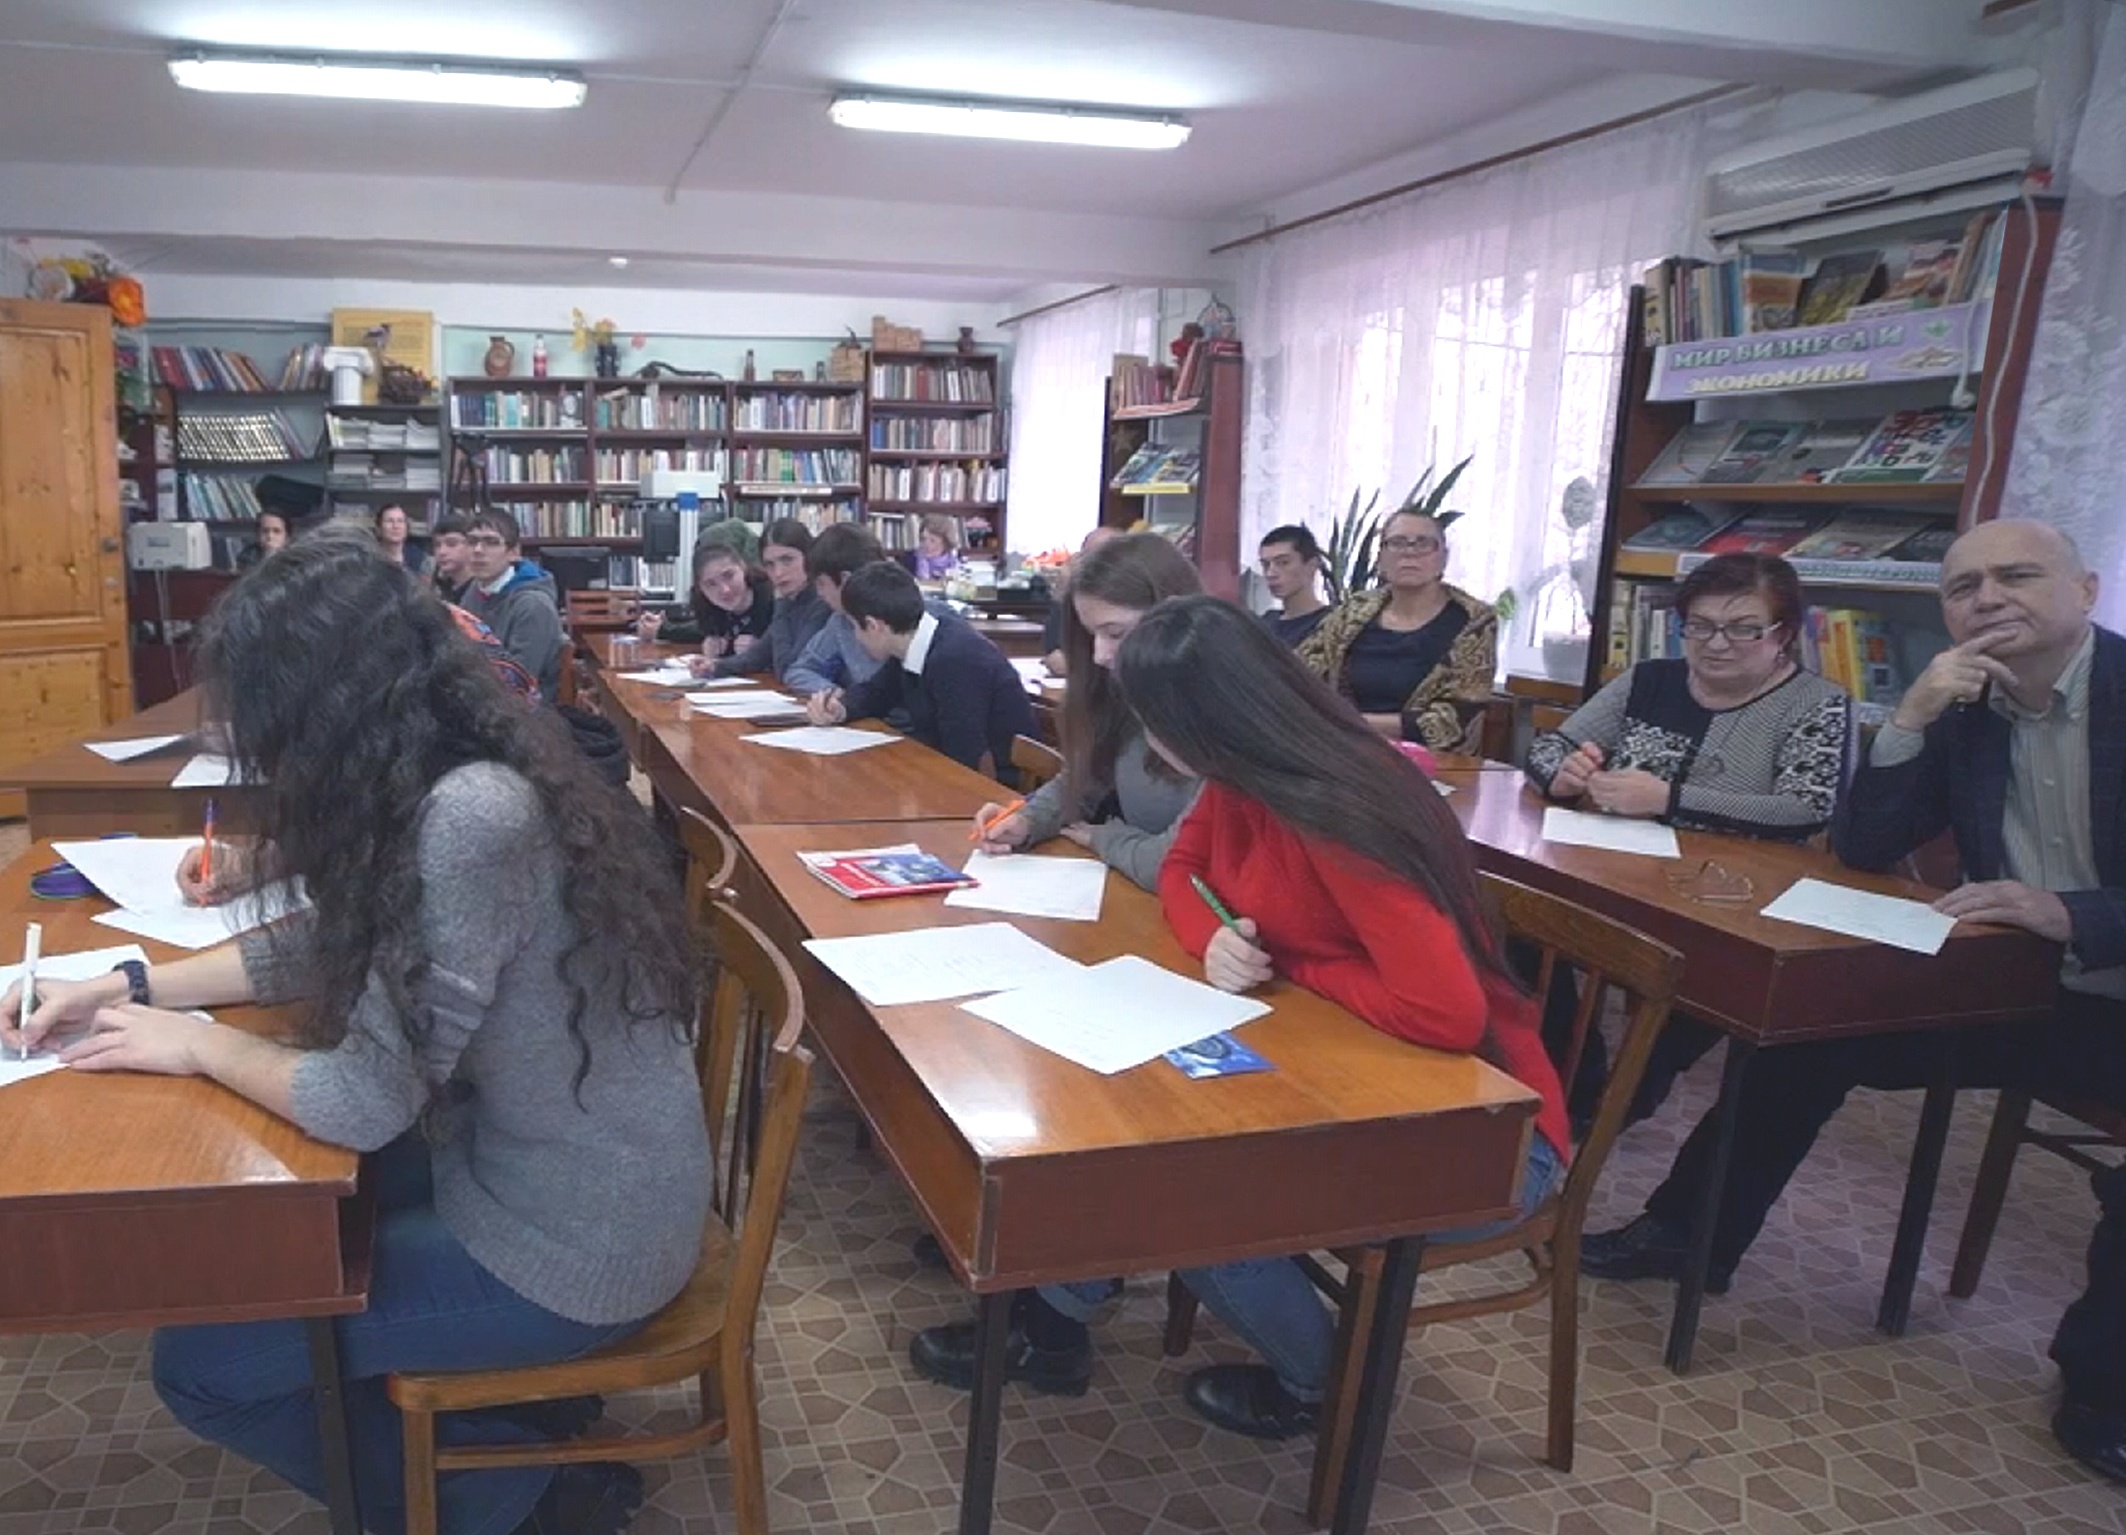 Написание диктанта. Фото предоставлено Дагестанским республиканским отделением РГО